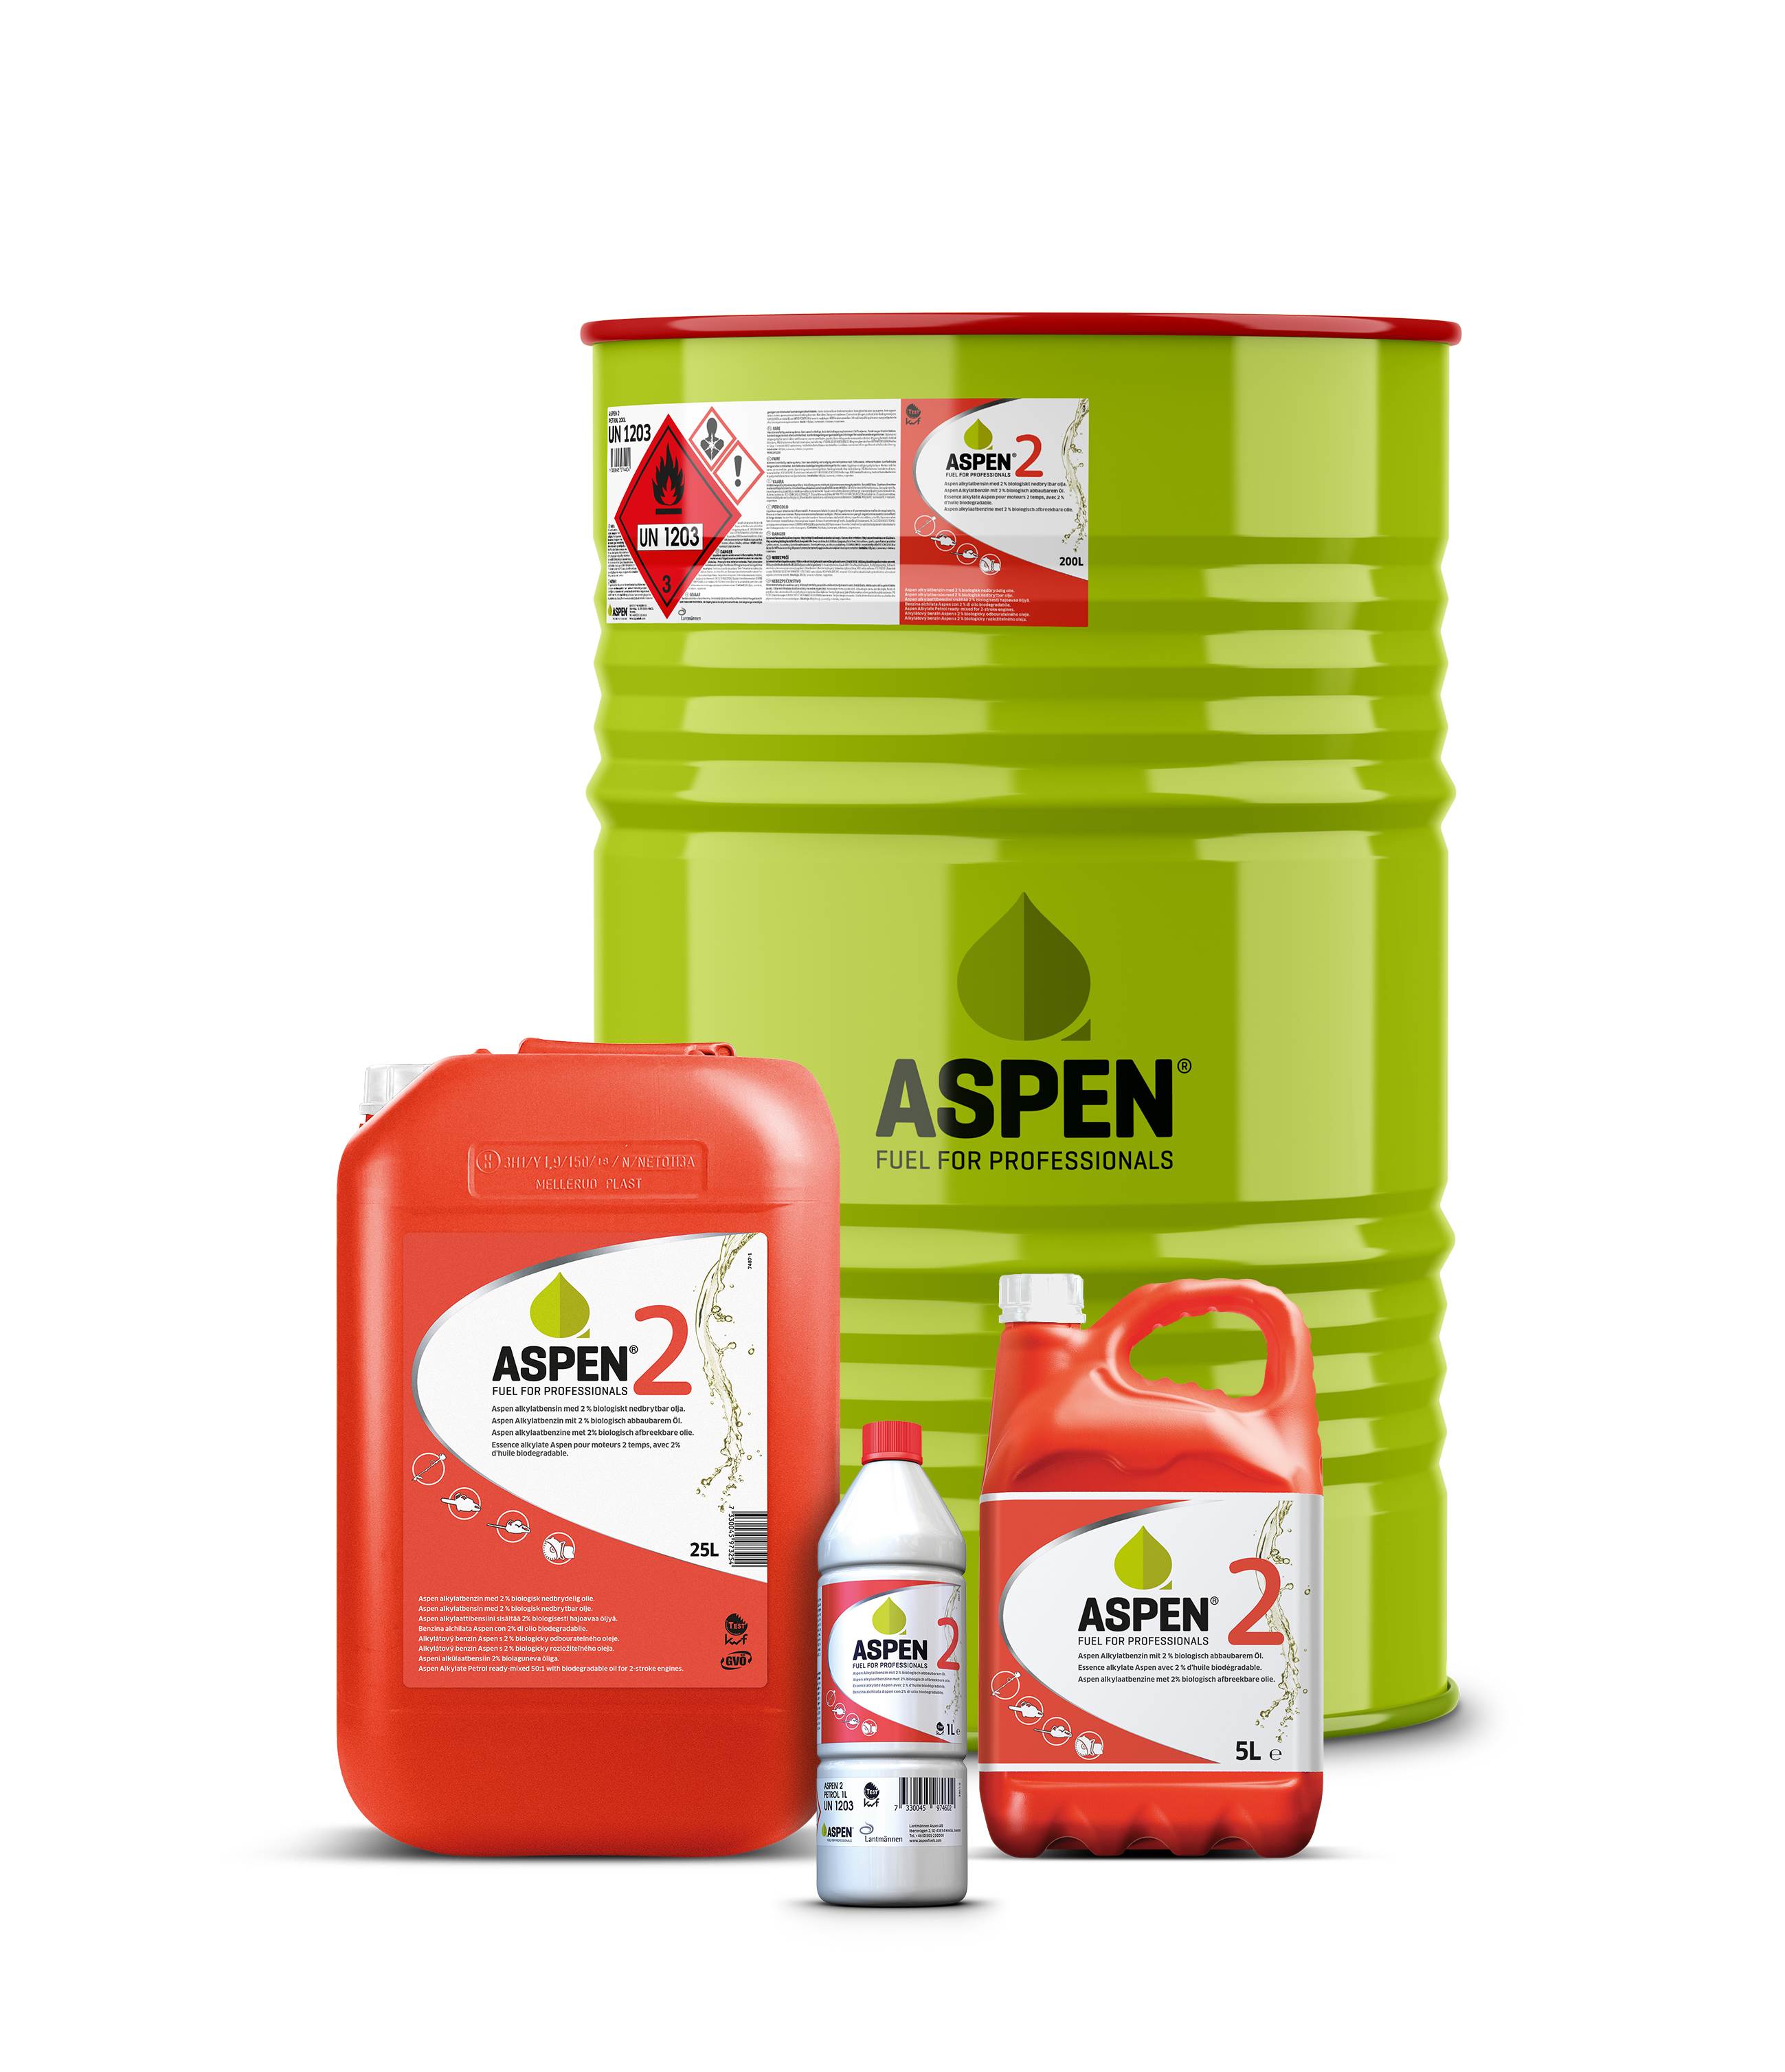 ASPEN 2 5 Liter, Zweitakt-gemisch, biologisch abbaubar, sorgt für